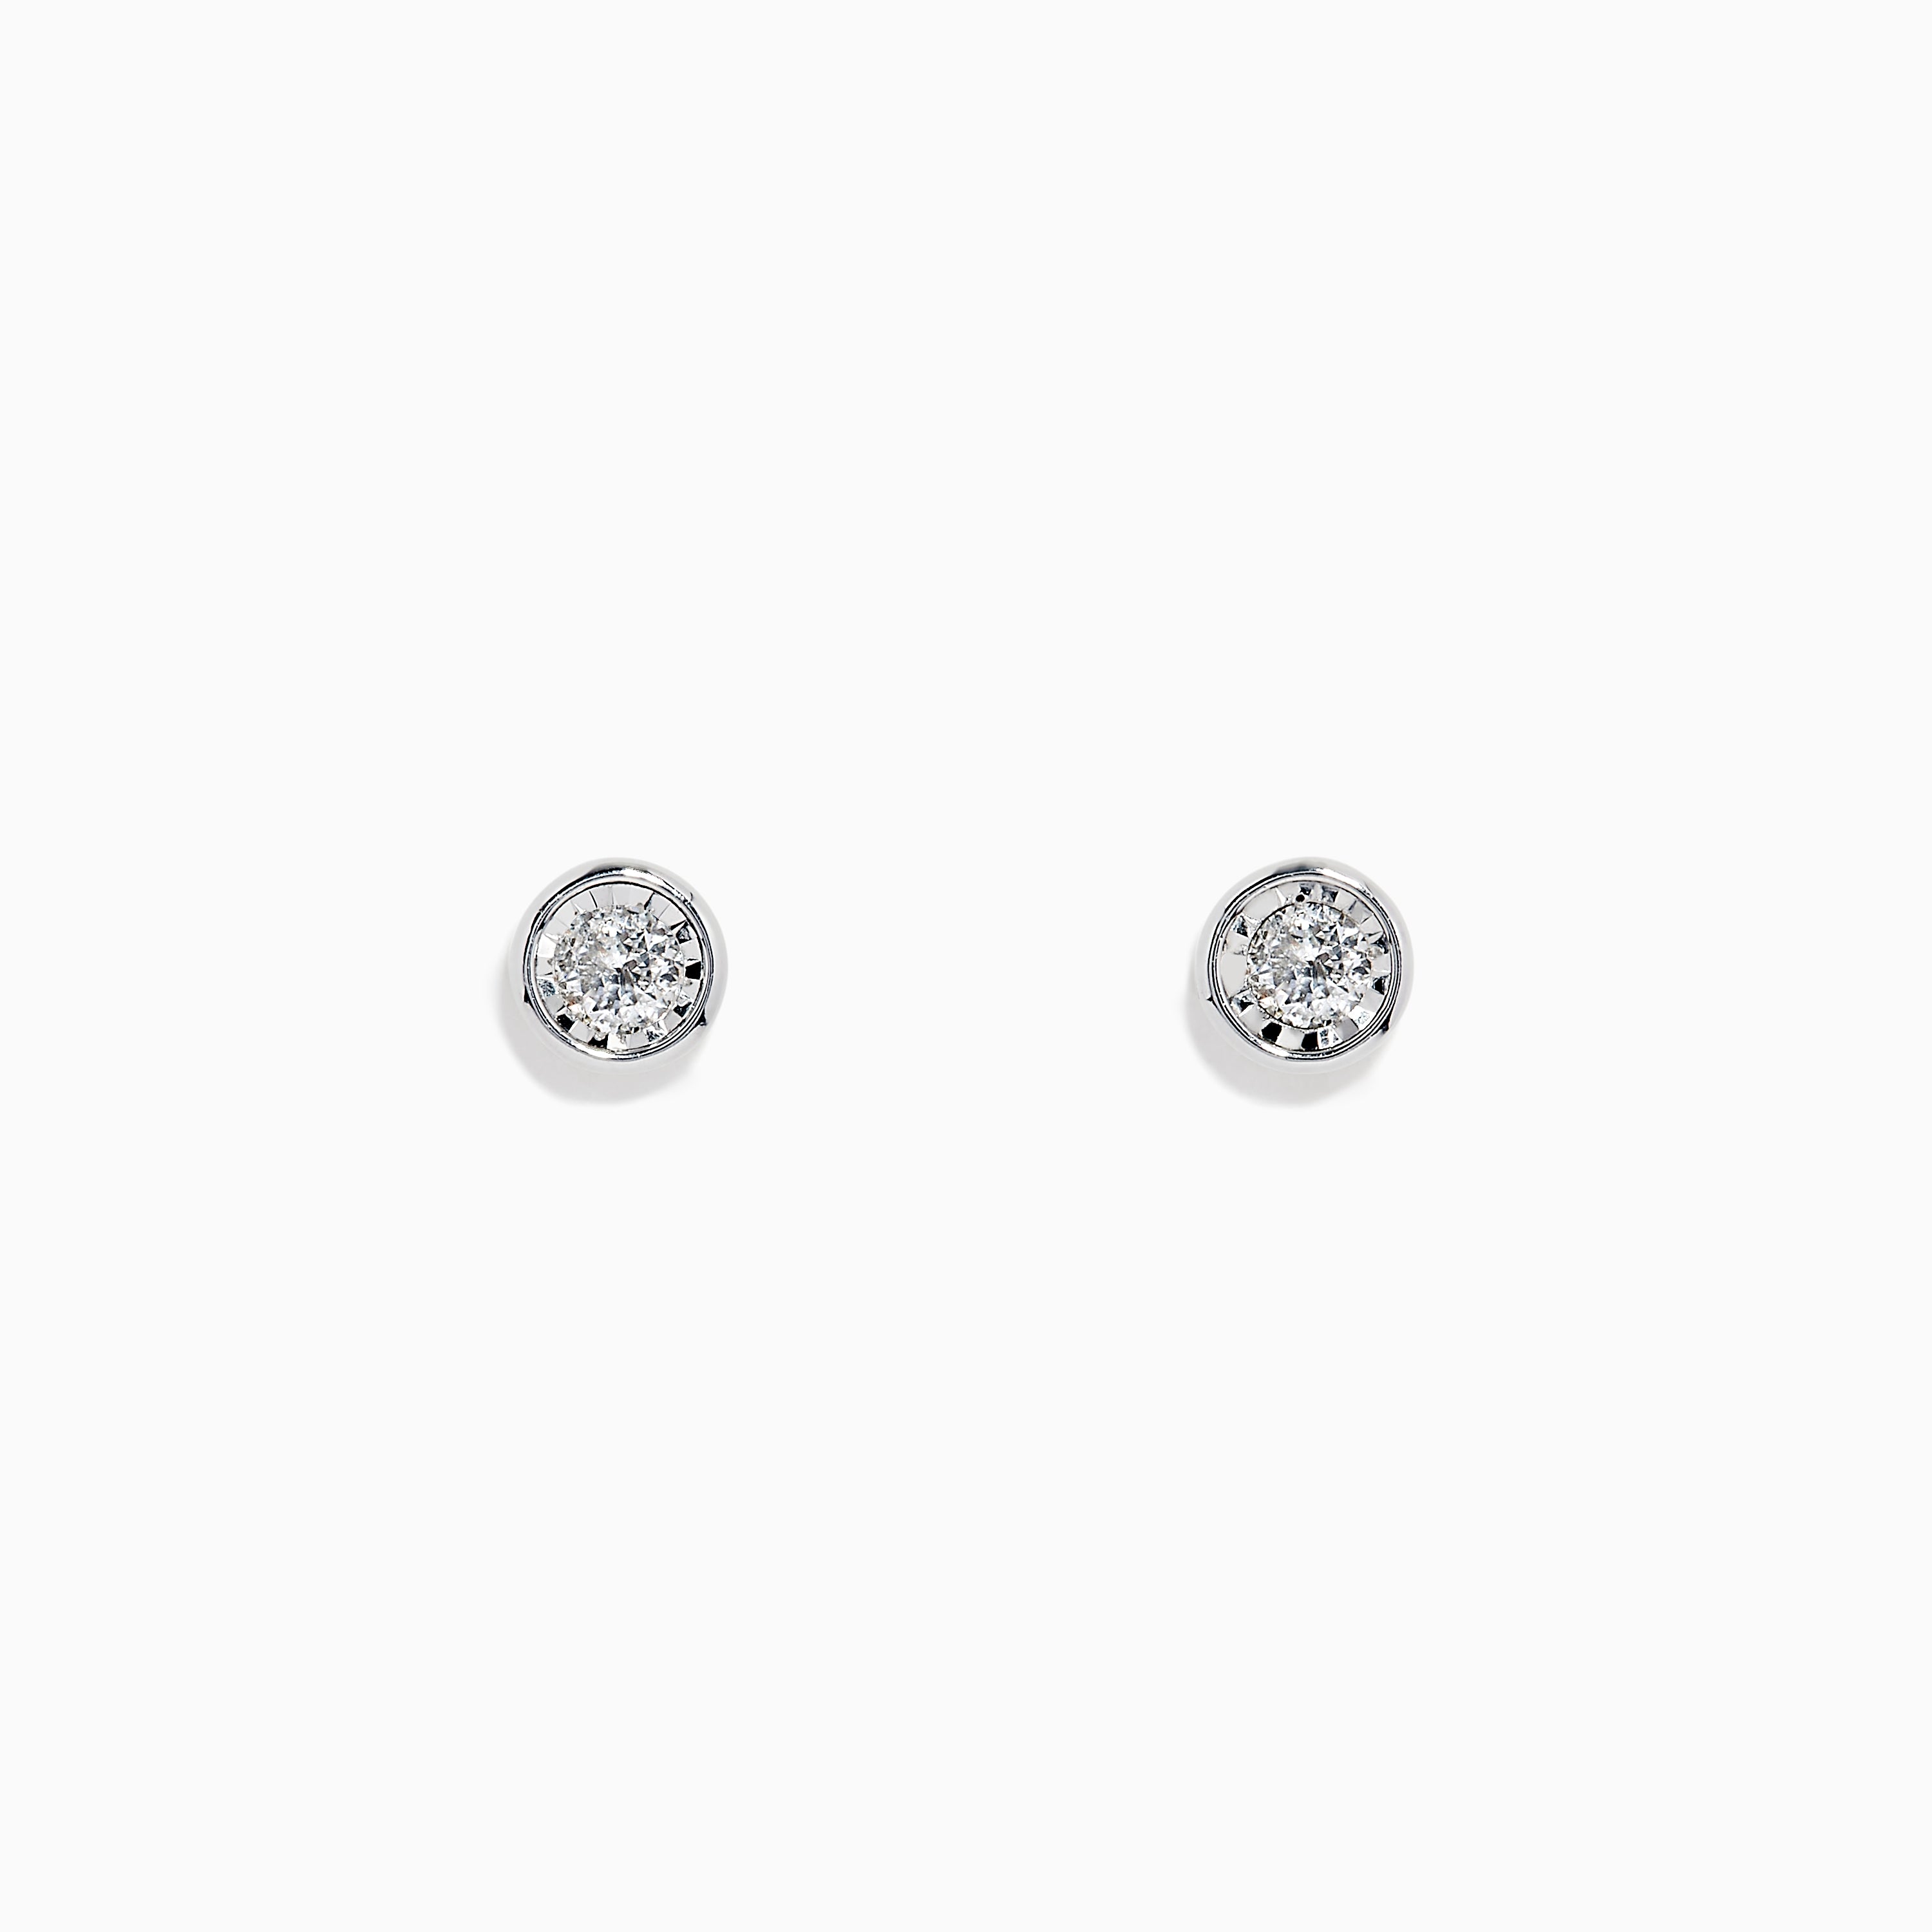 Sparkling 5 Carat Flower Stud Earrings in 925 Silver